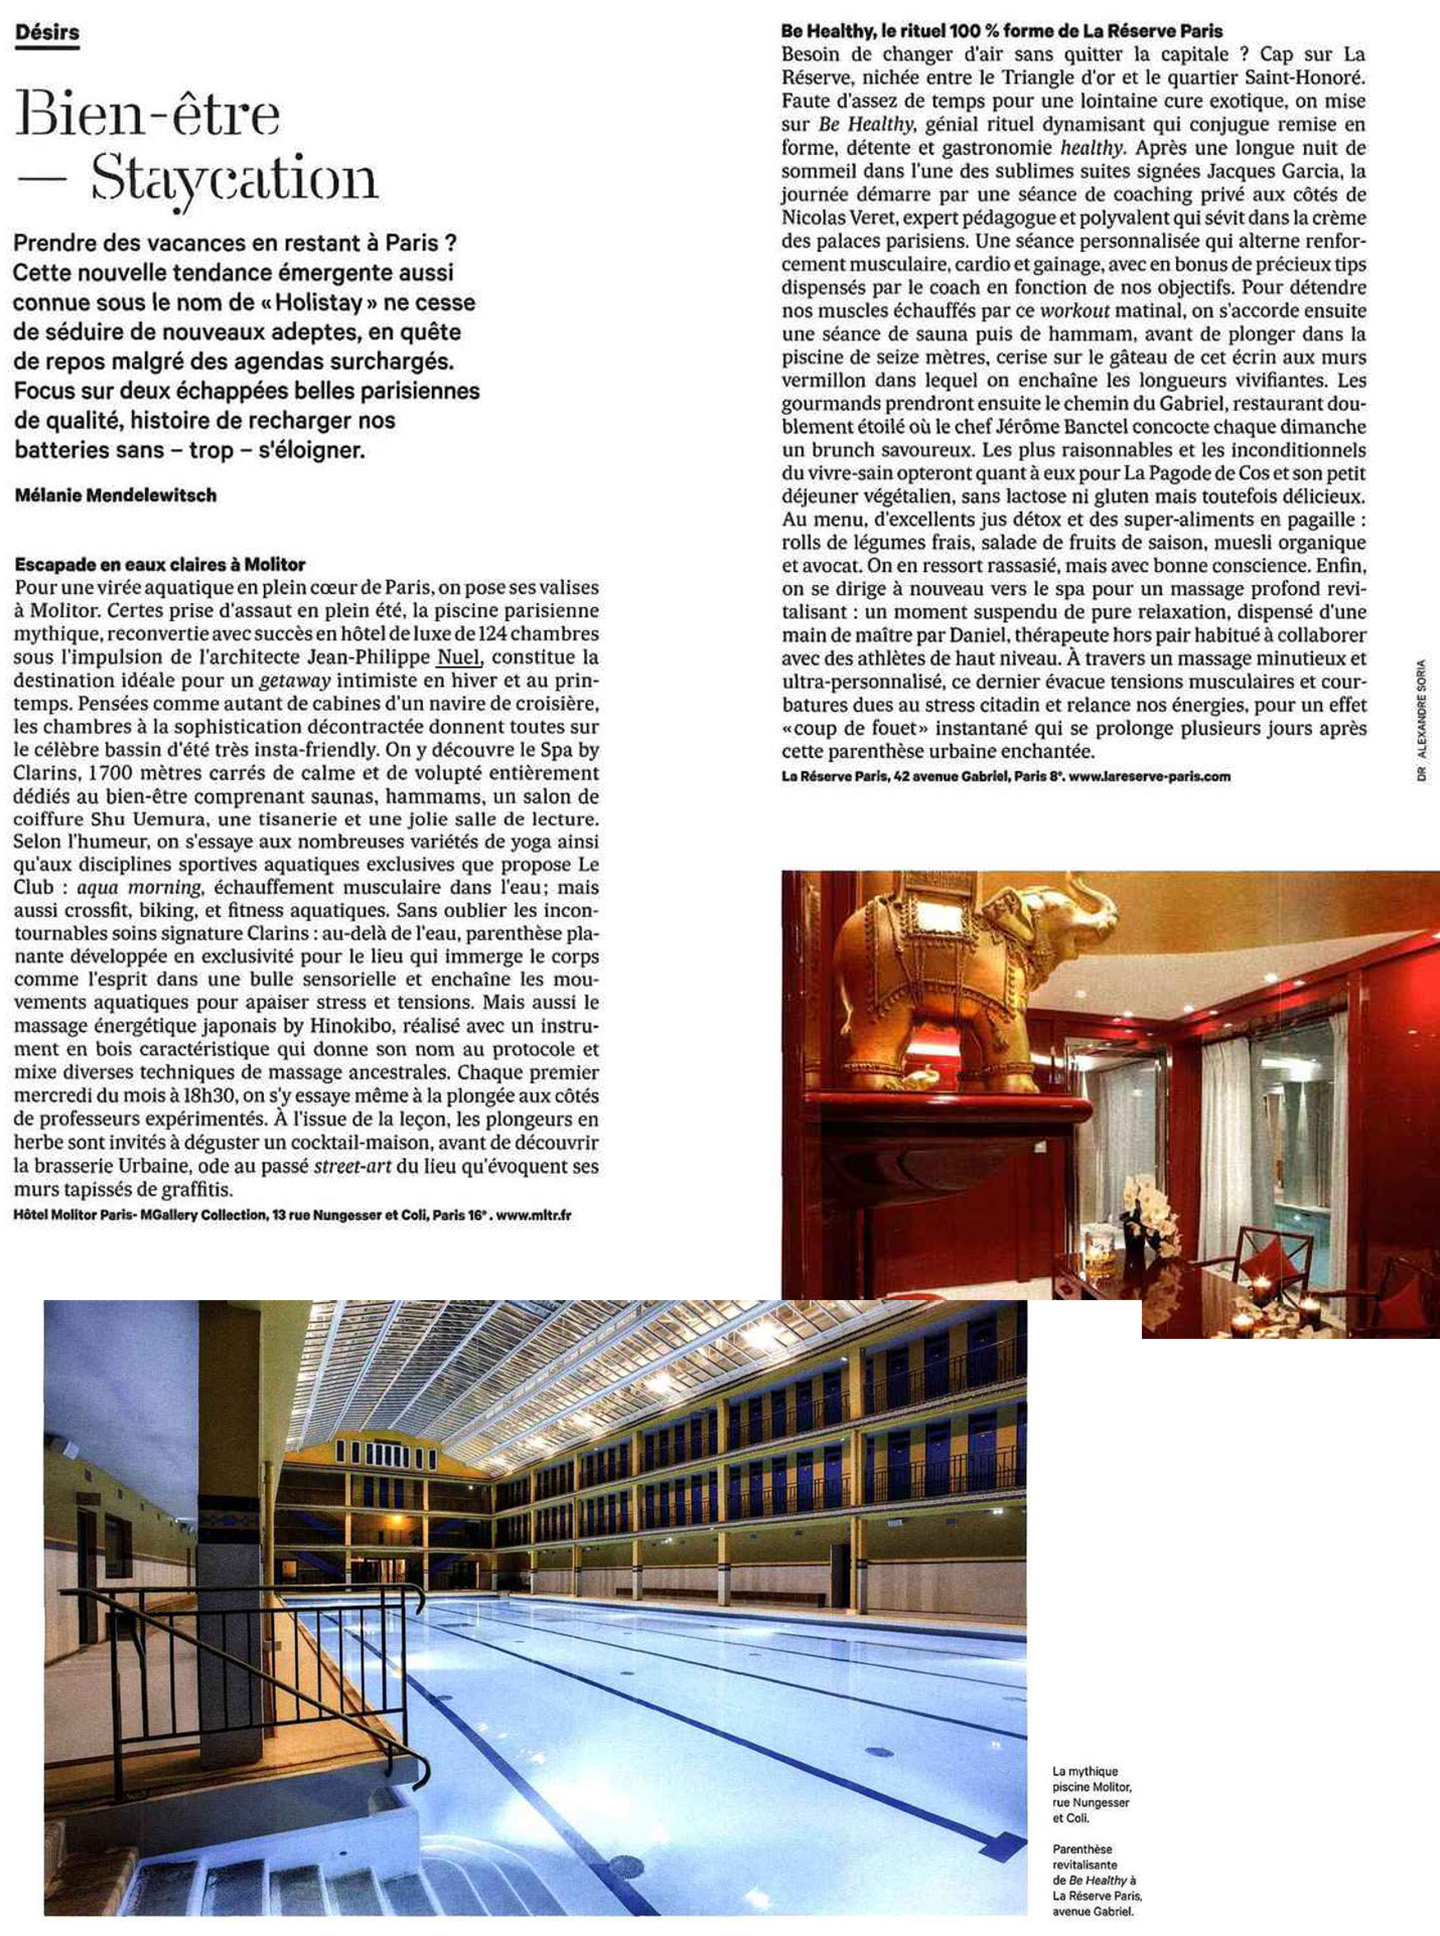 Article sur la piscine Molitor réalisée par le studio jean-Philippe Nuel dans le magazine les Echos, nouvel hotel lifestyle, architecture d'intérieur de luxe, rehabilisation, street art